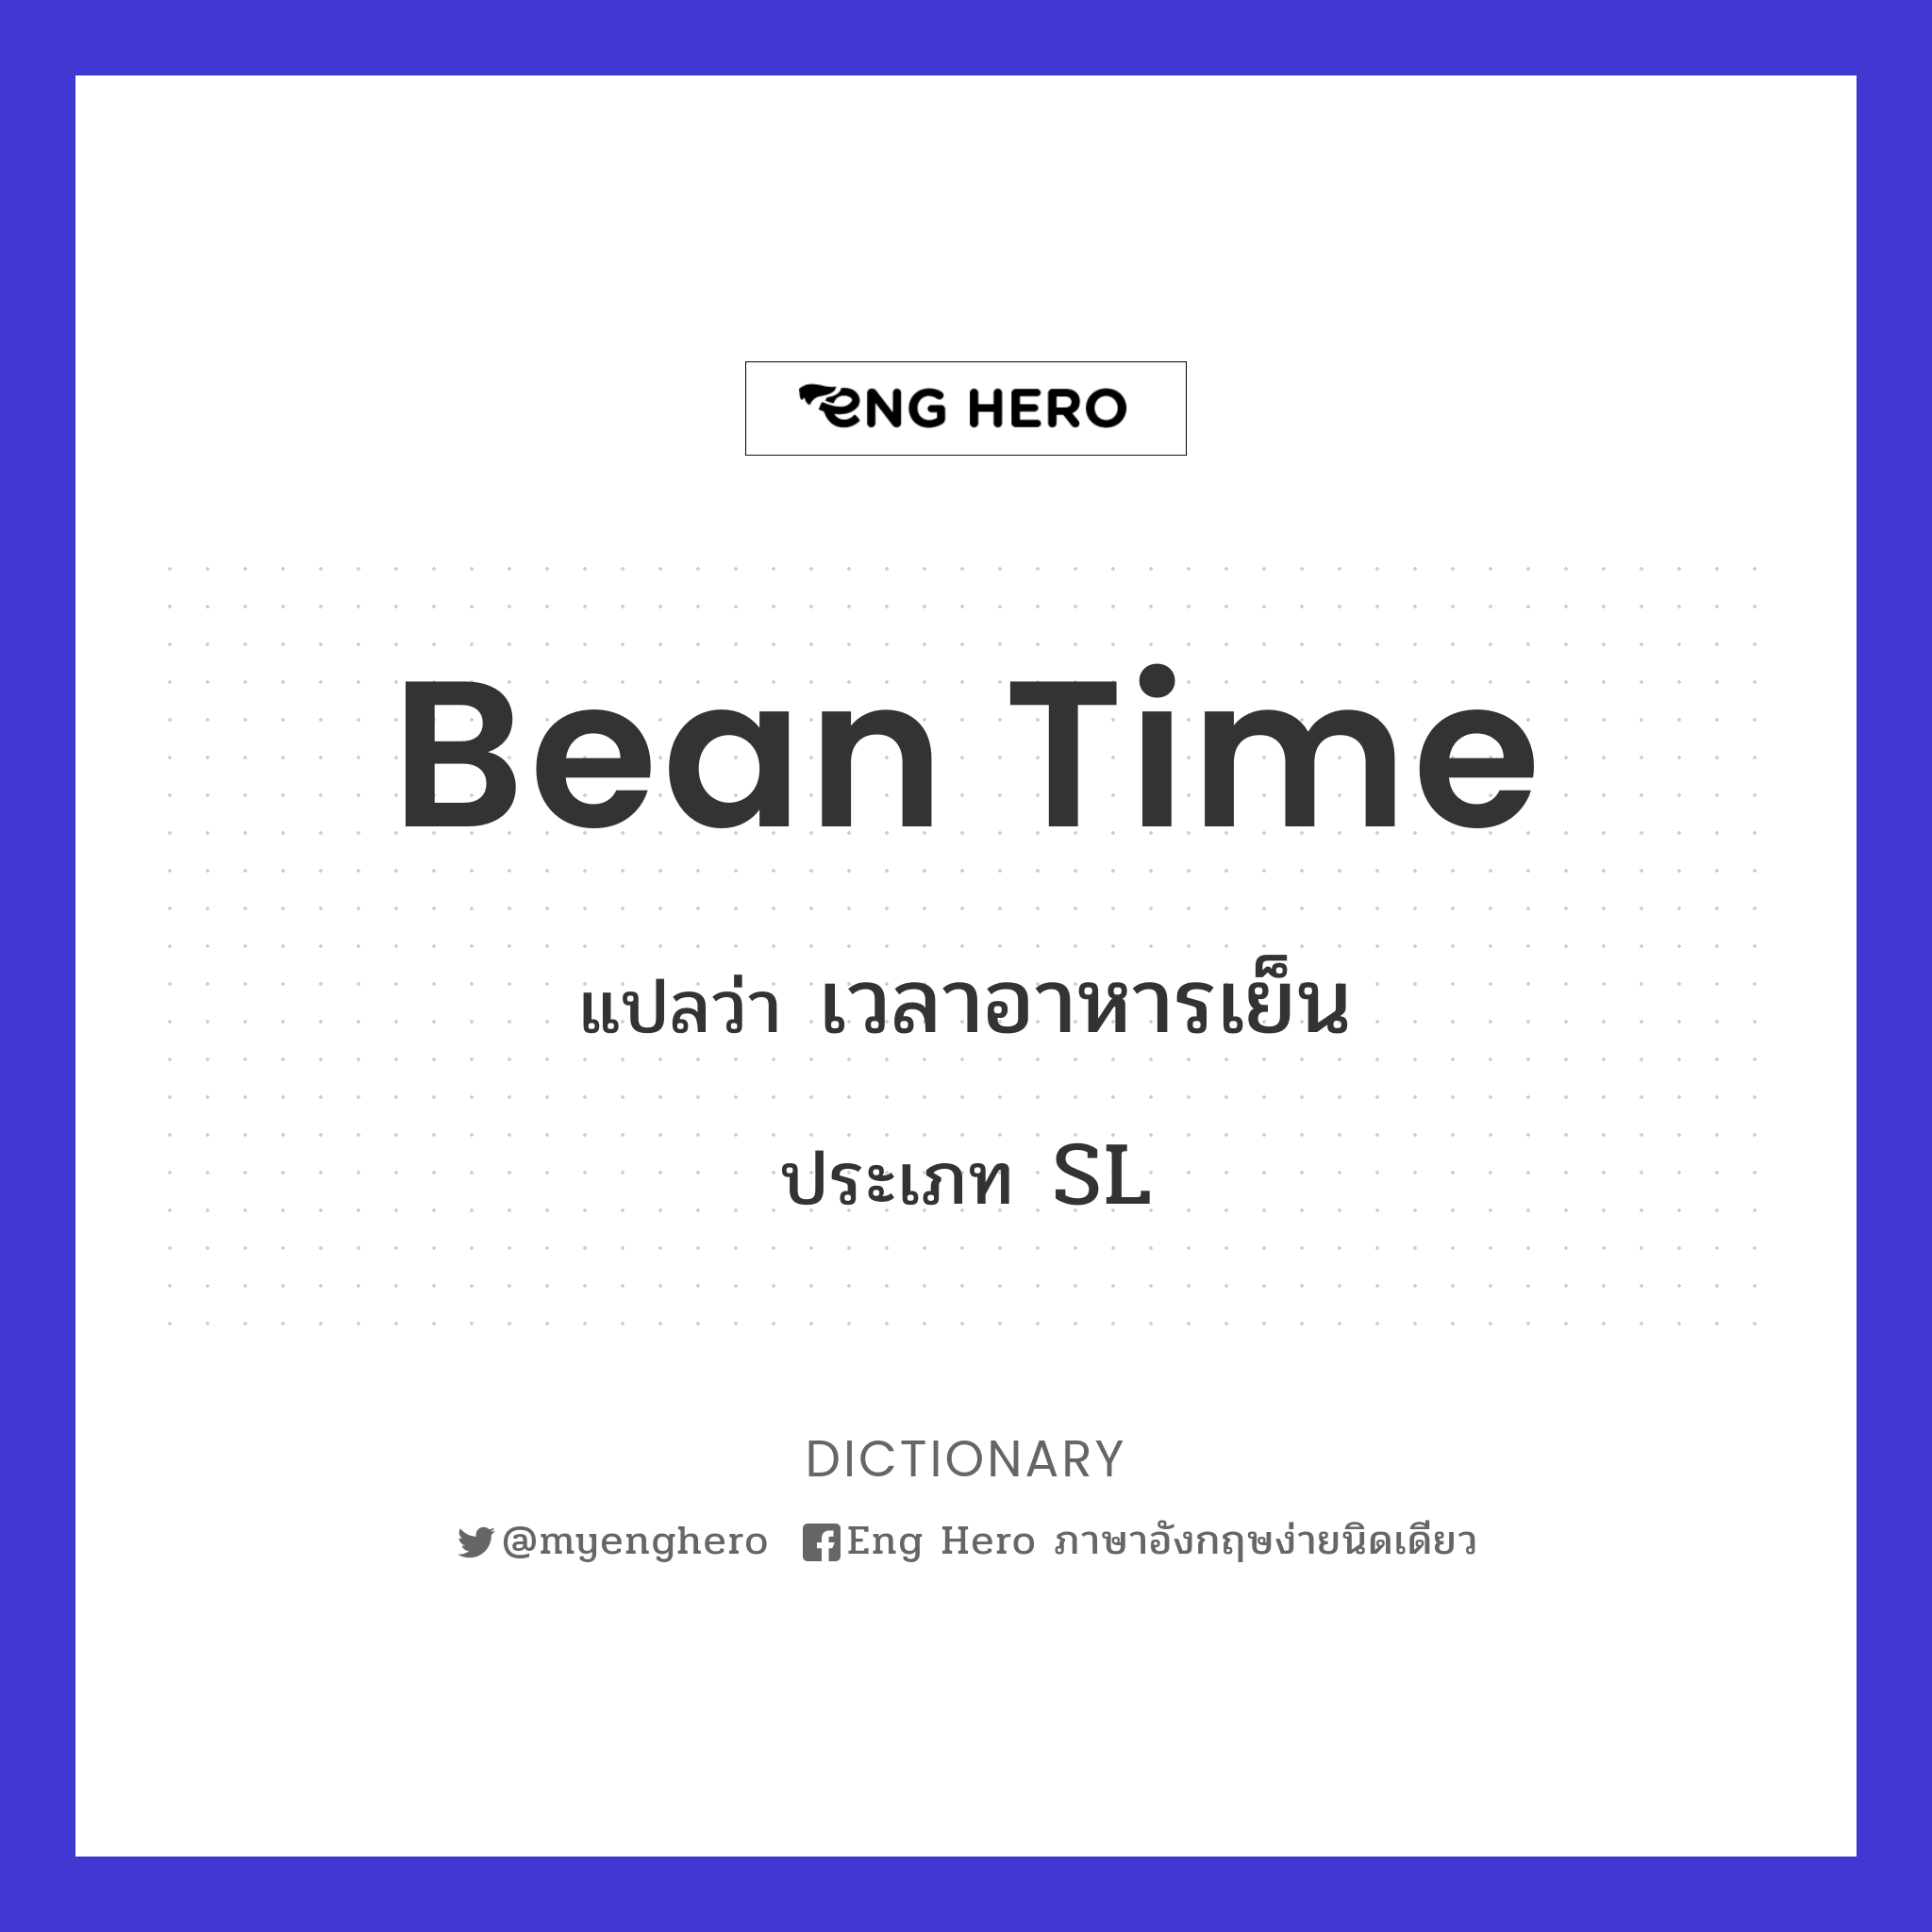 bean time